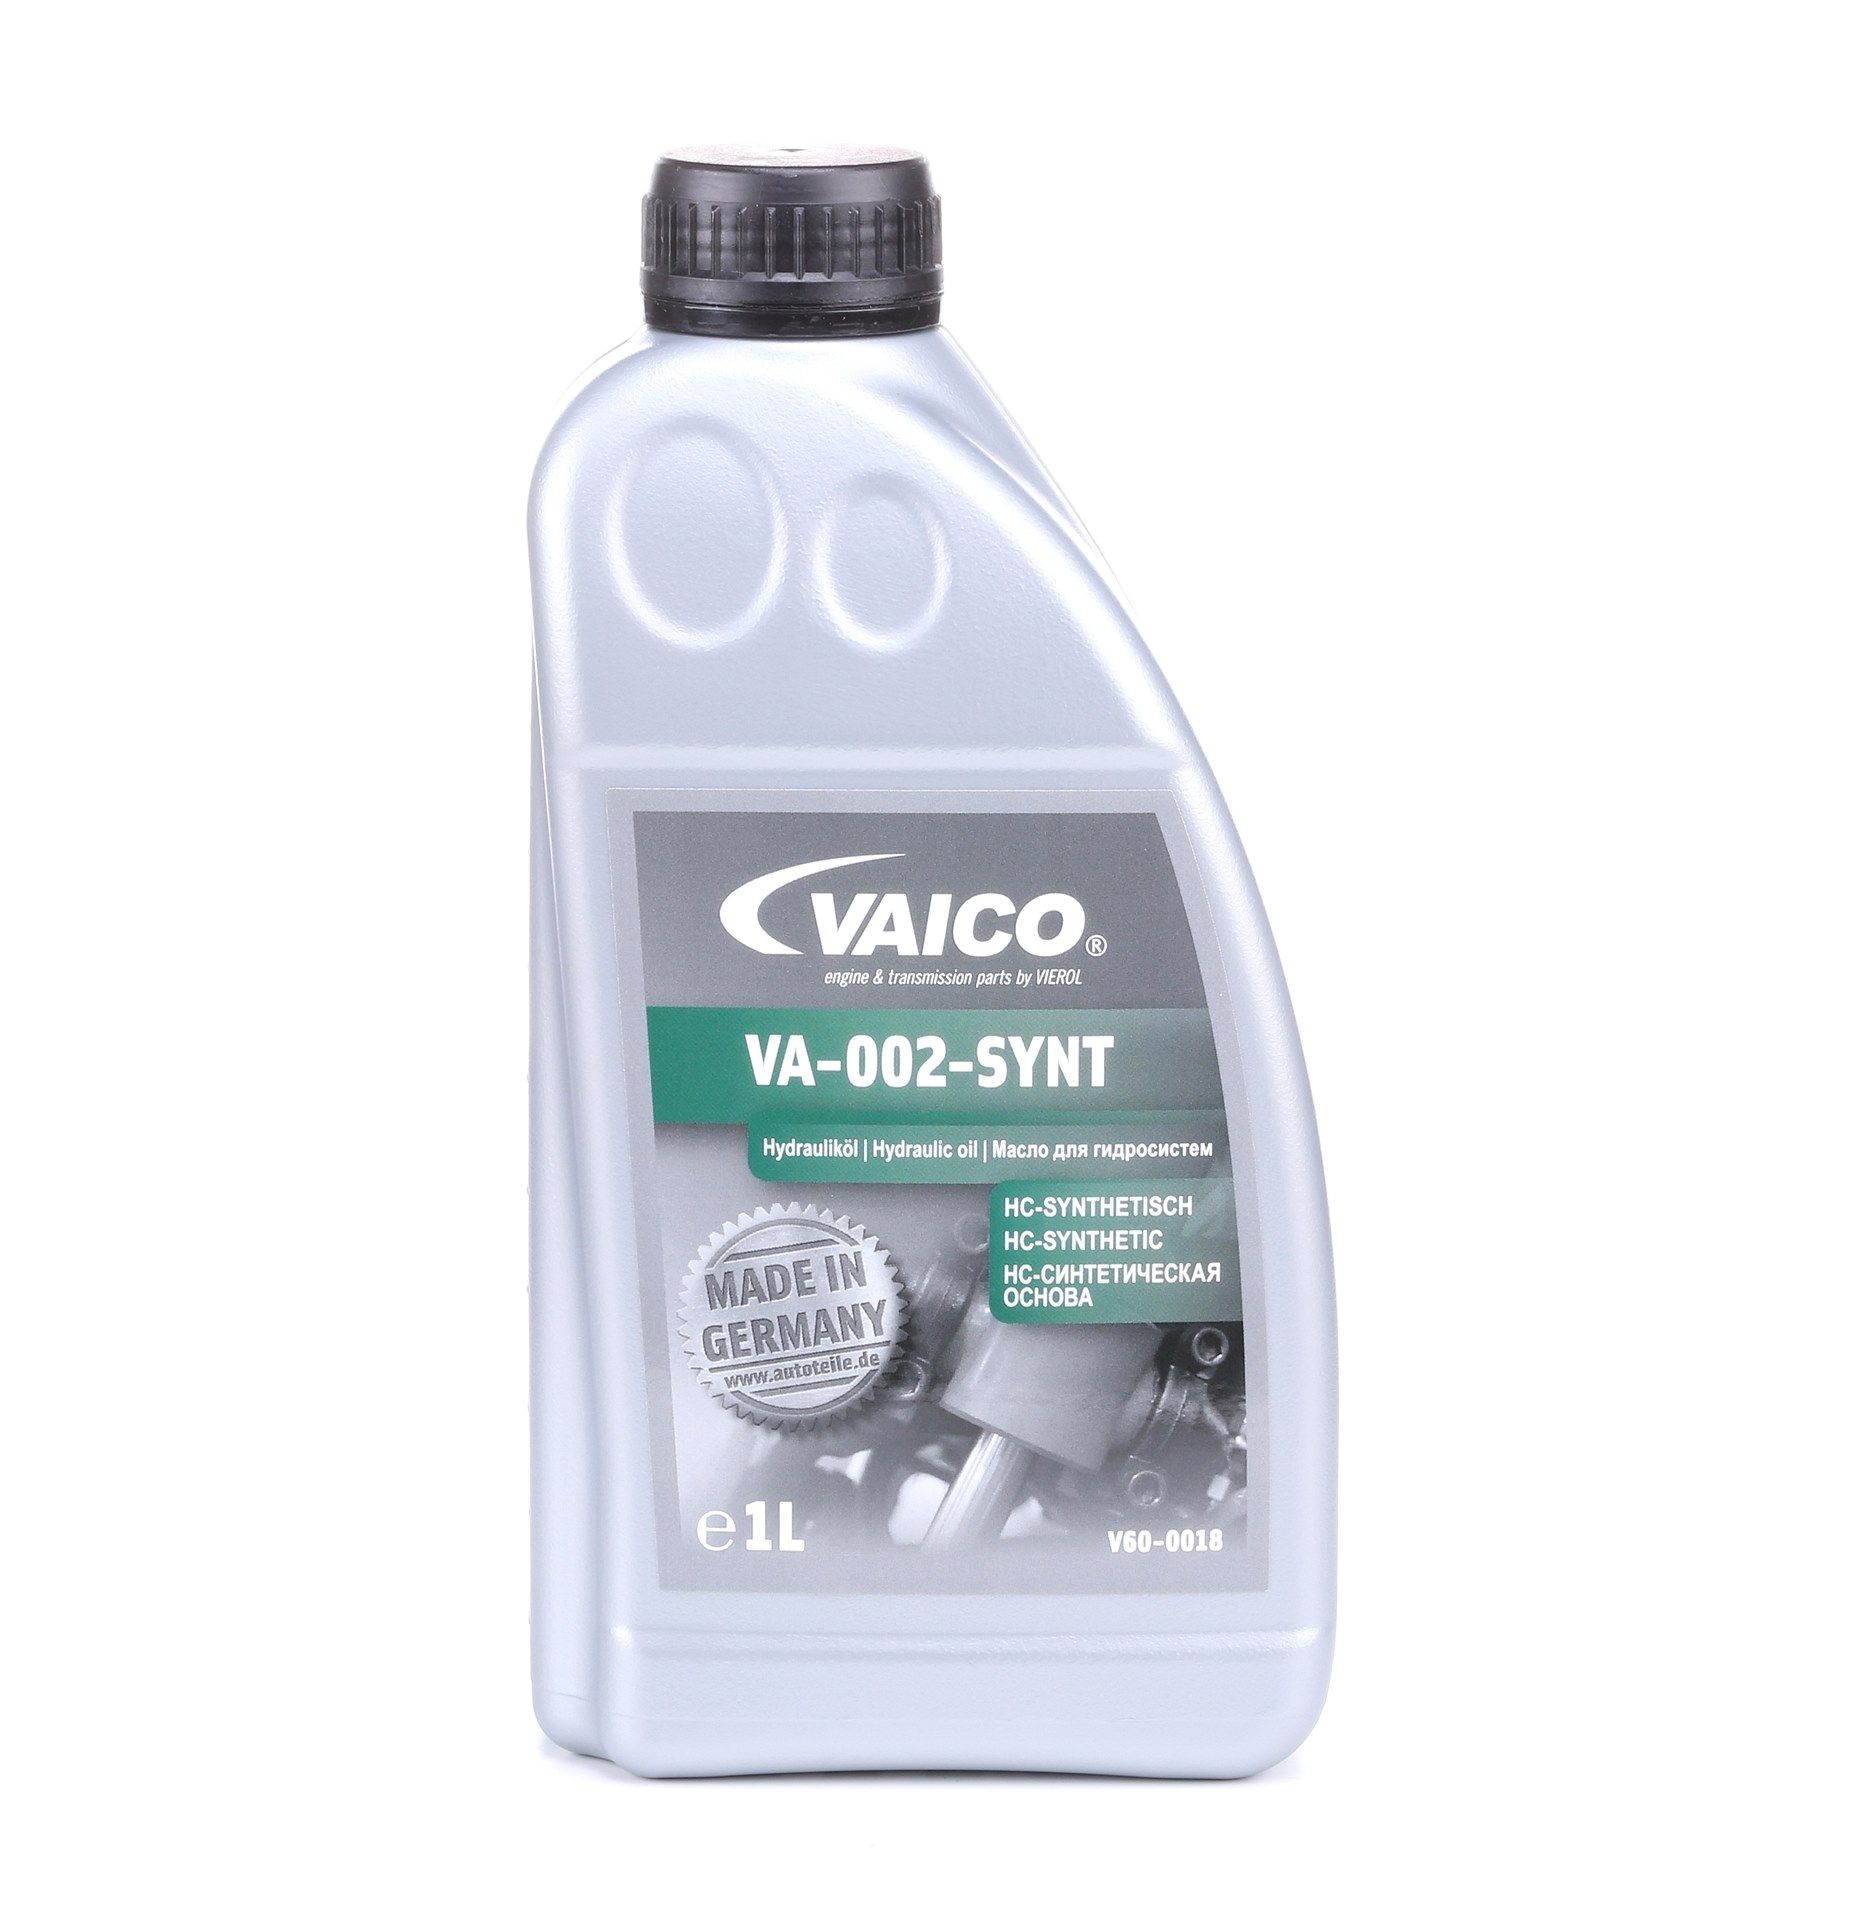 VOLVO1161529 VAICO Q+, Erstausrüsterqualität MADE IN GERMANY Zentralhydrauliköl V60-0018 günstig